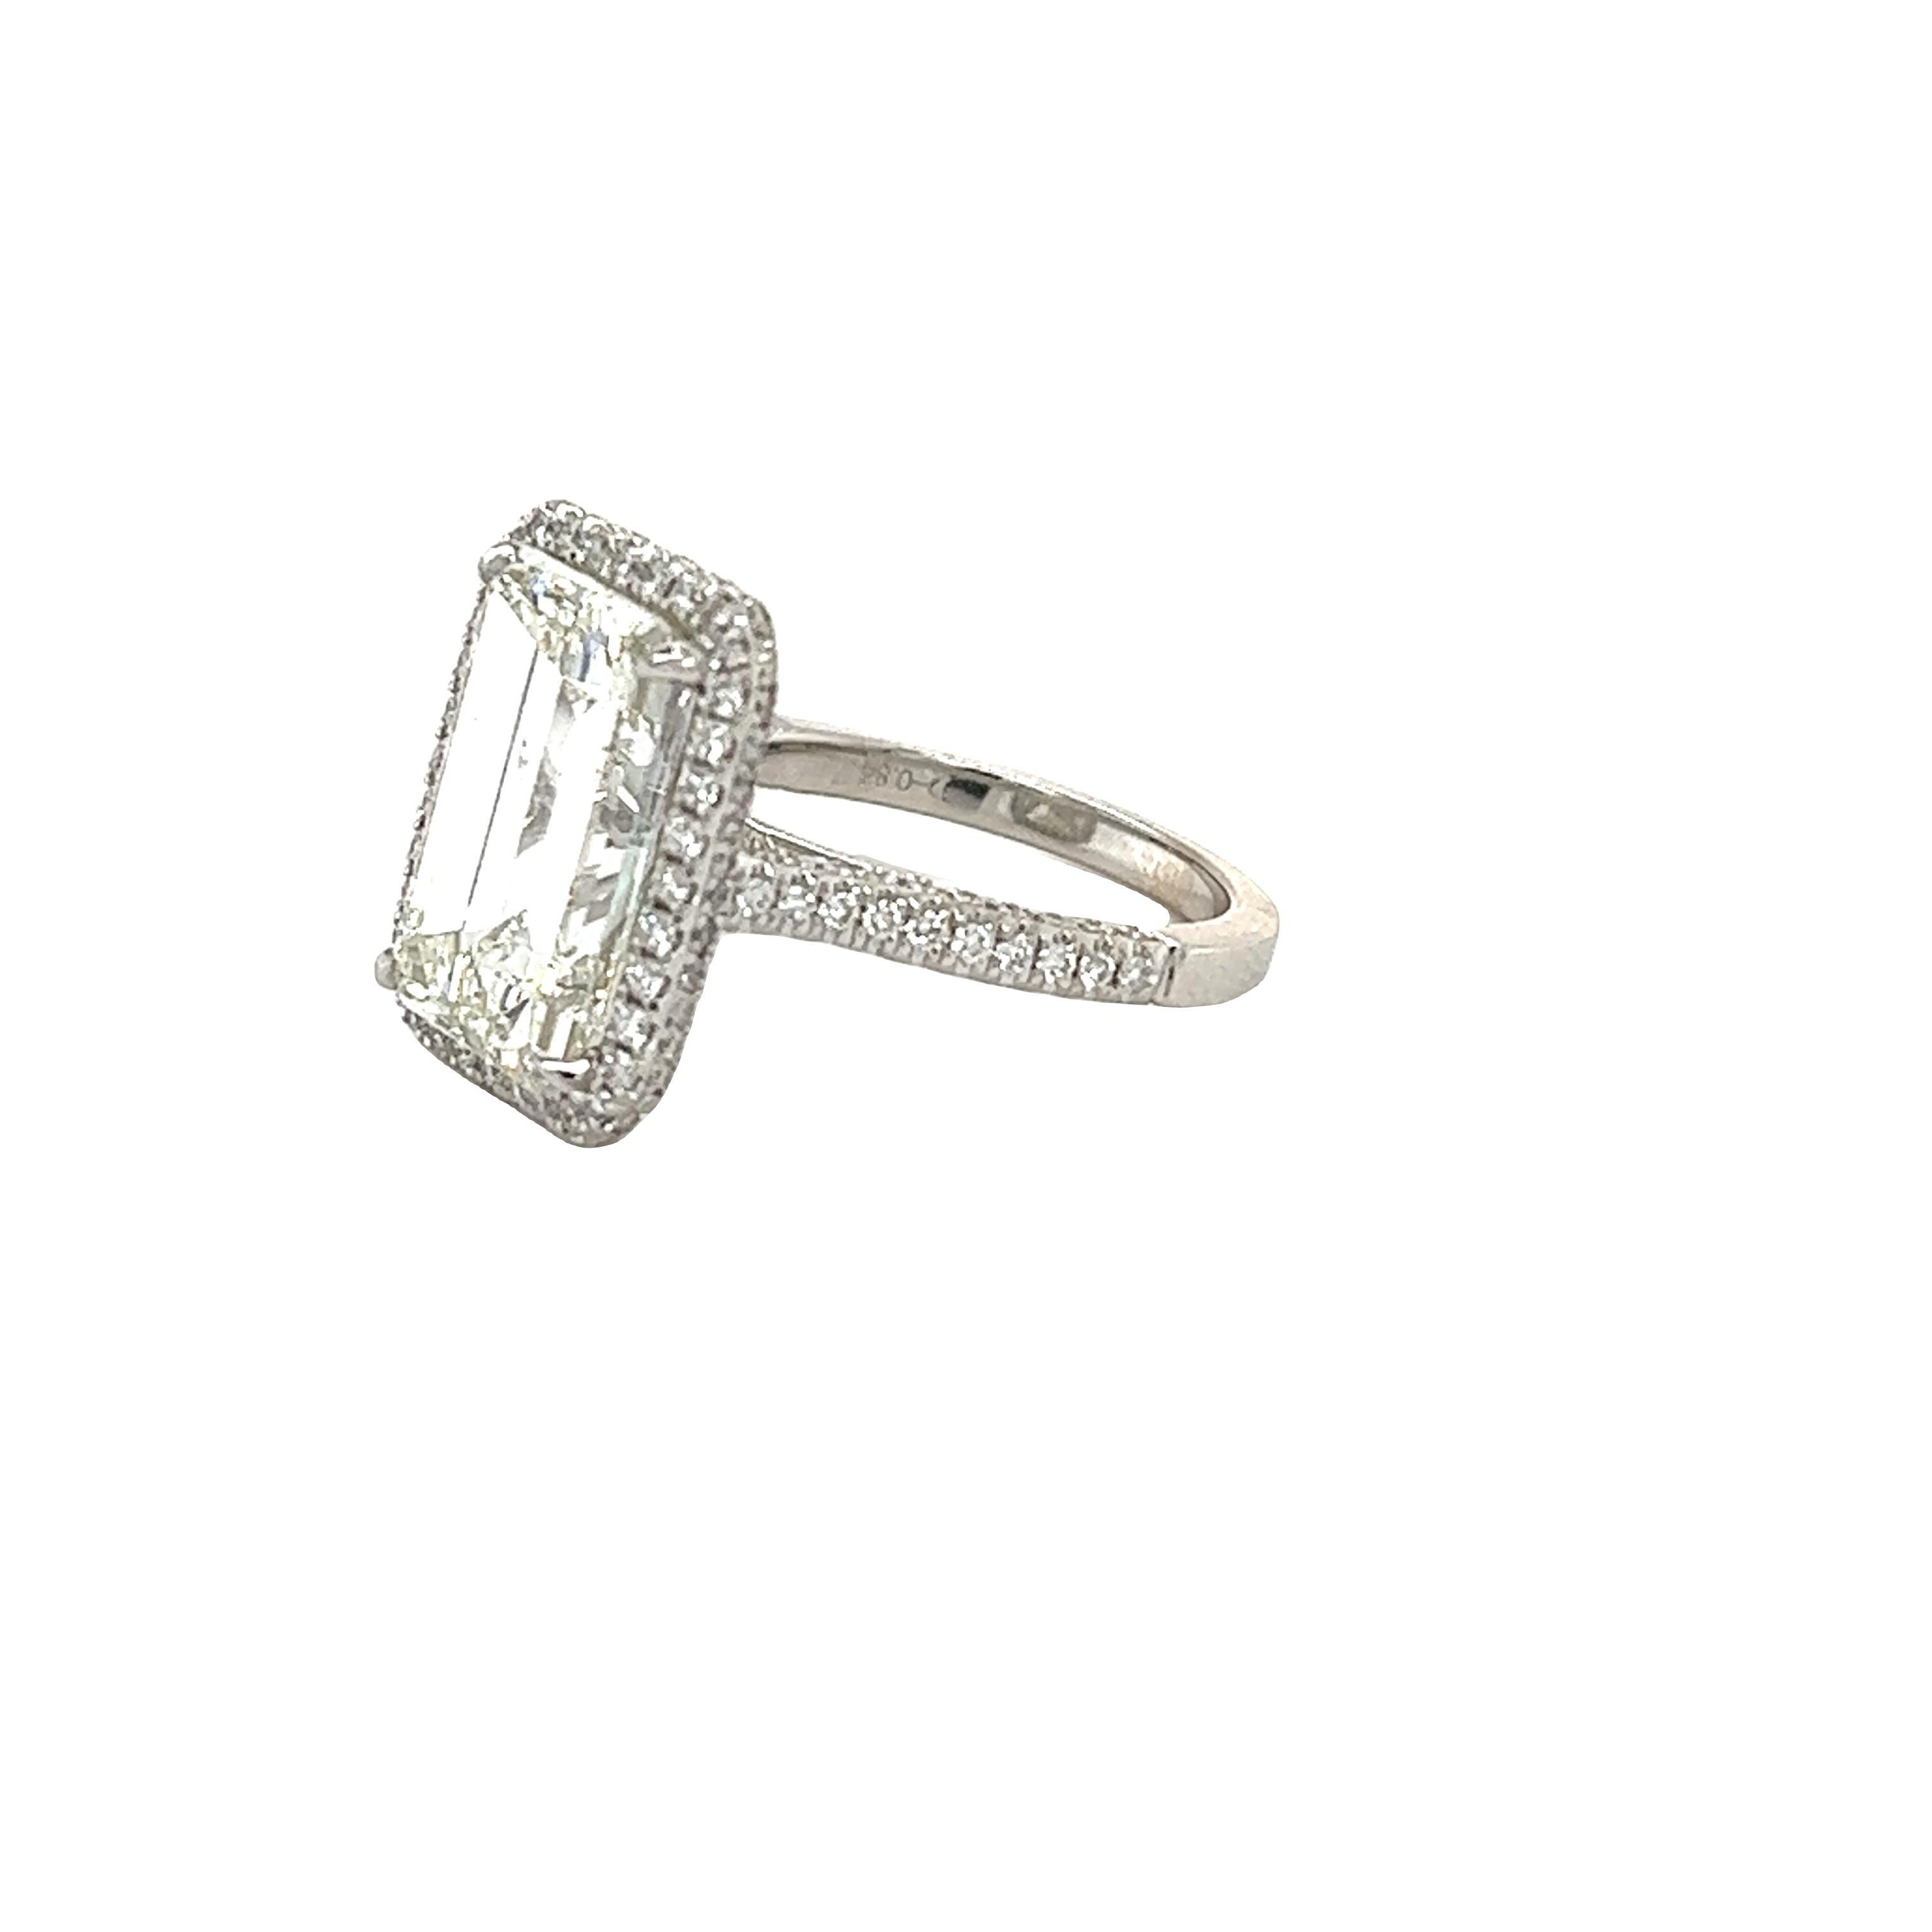 Women's David Rosenberg 7.06 Carat Emerald Cut GIA Diamond Engagement Ring